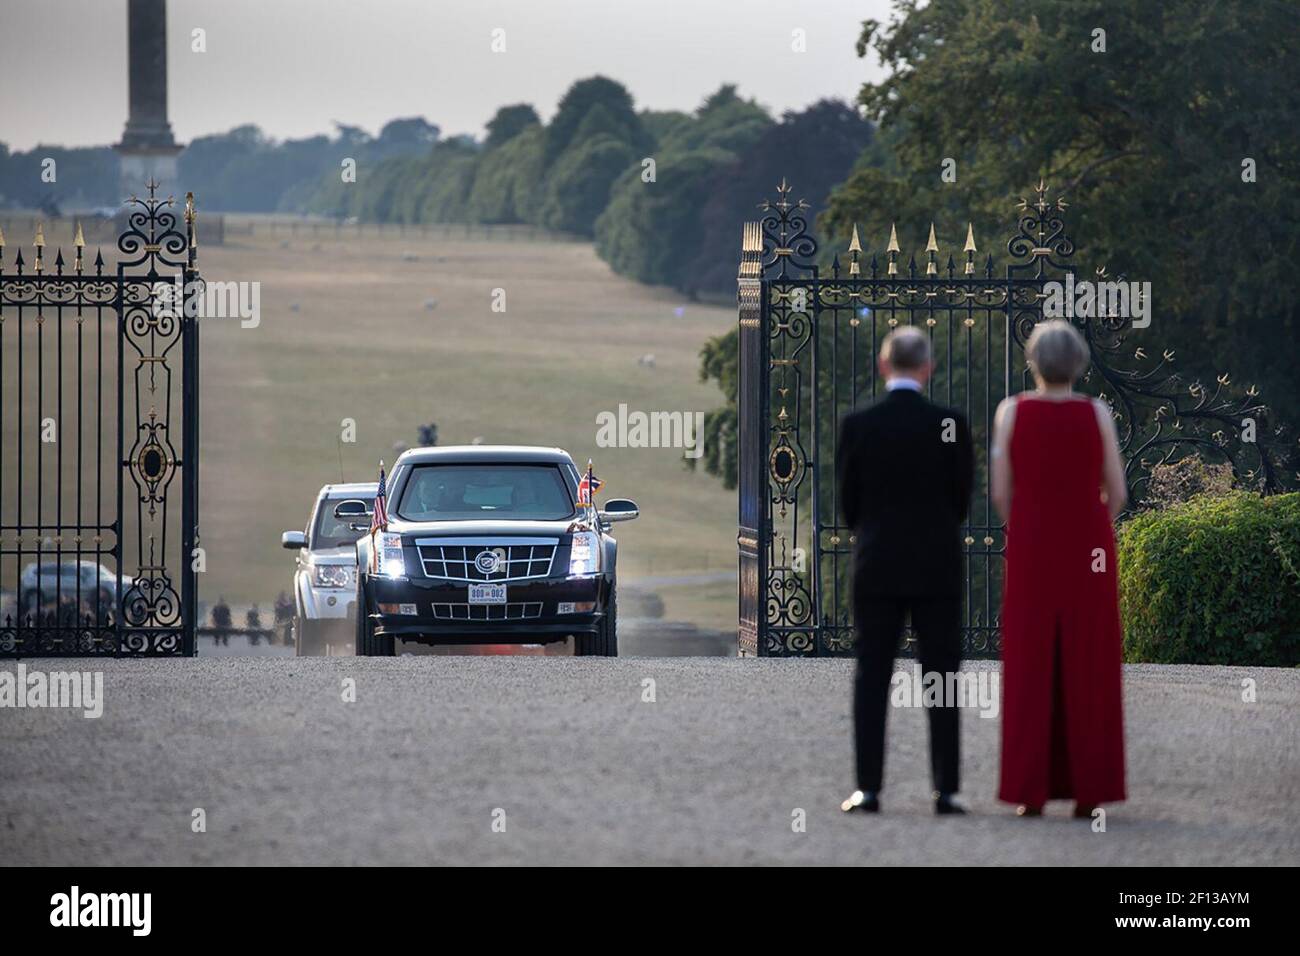 La première ministre Theresa May et son mari Philip May sont les hôtes Une cérémonie d'arrivée au Palais de Blenheim / juillet 12 2018 Banque D'Images